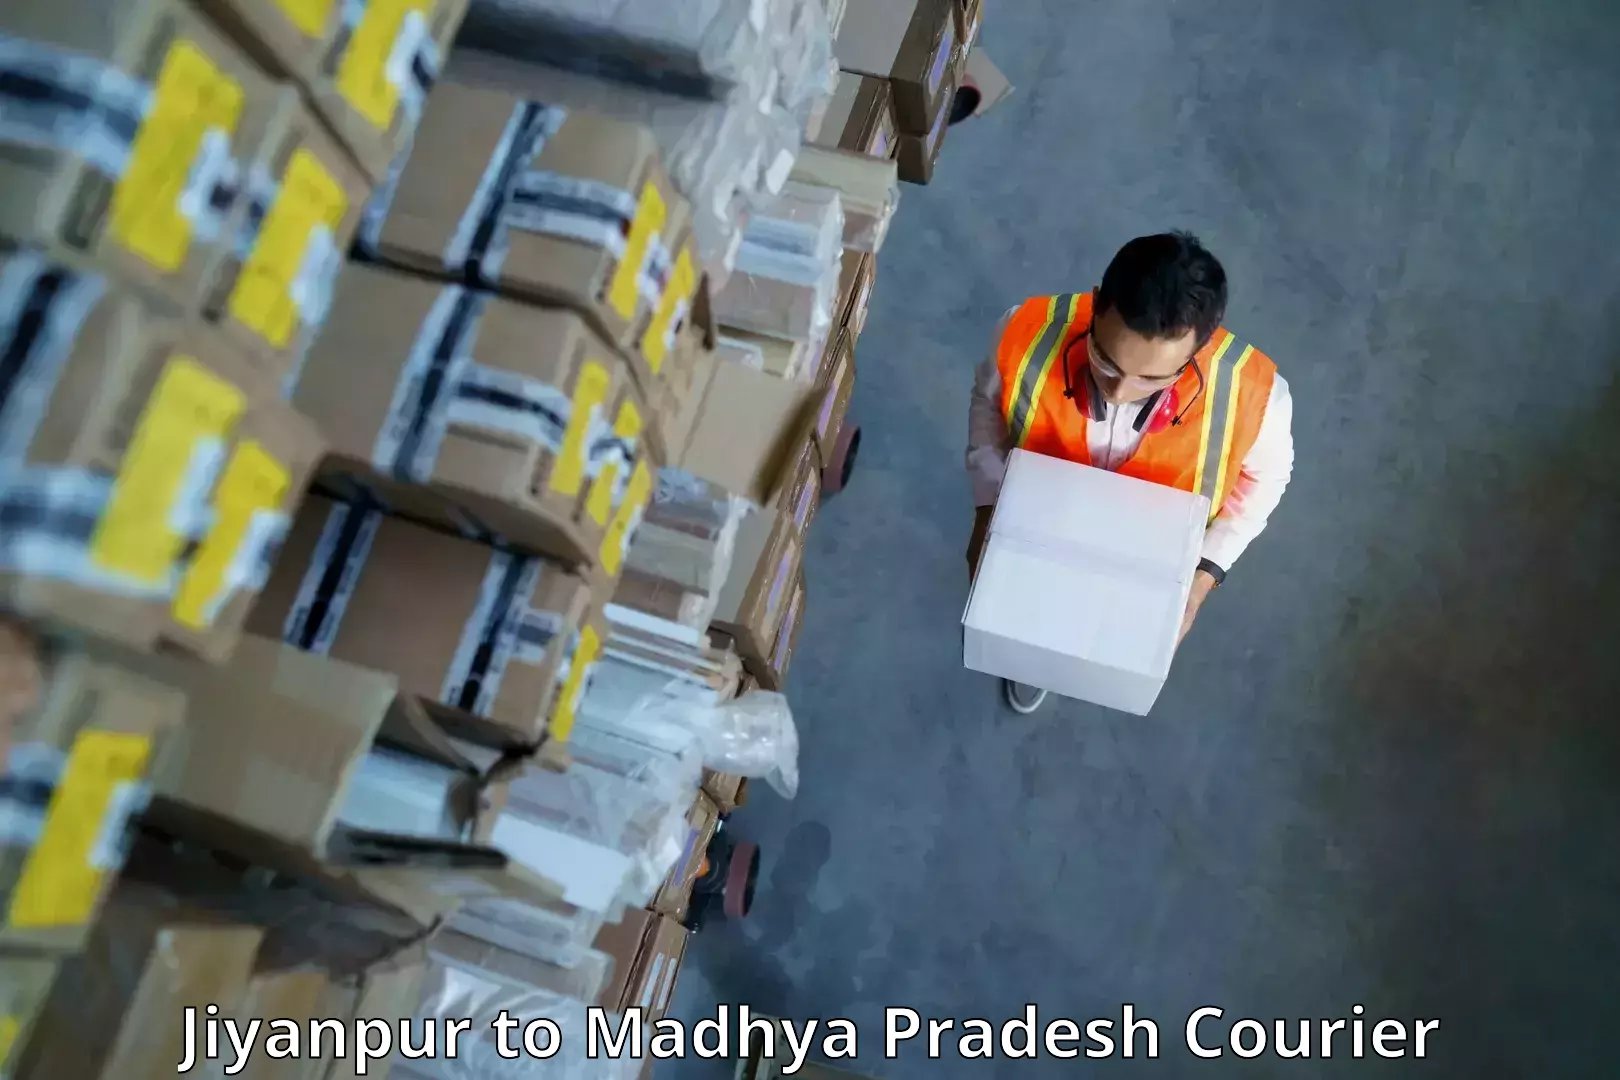 Efficient shipping operations Jiyanpur to Khajuraho